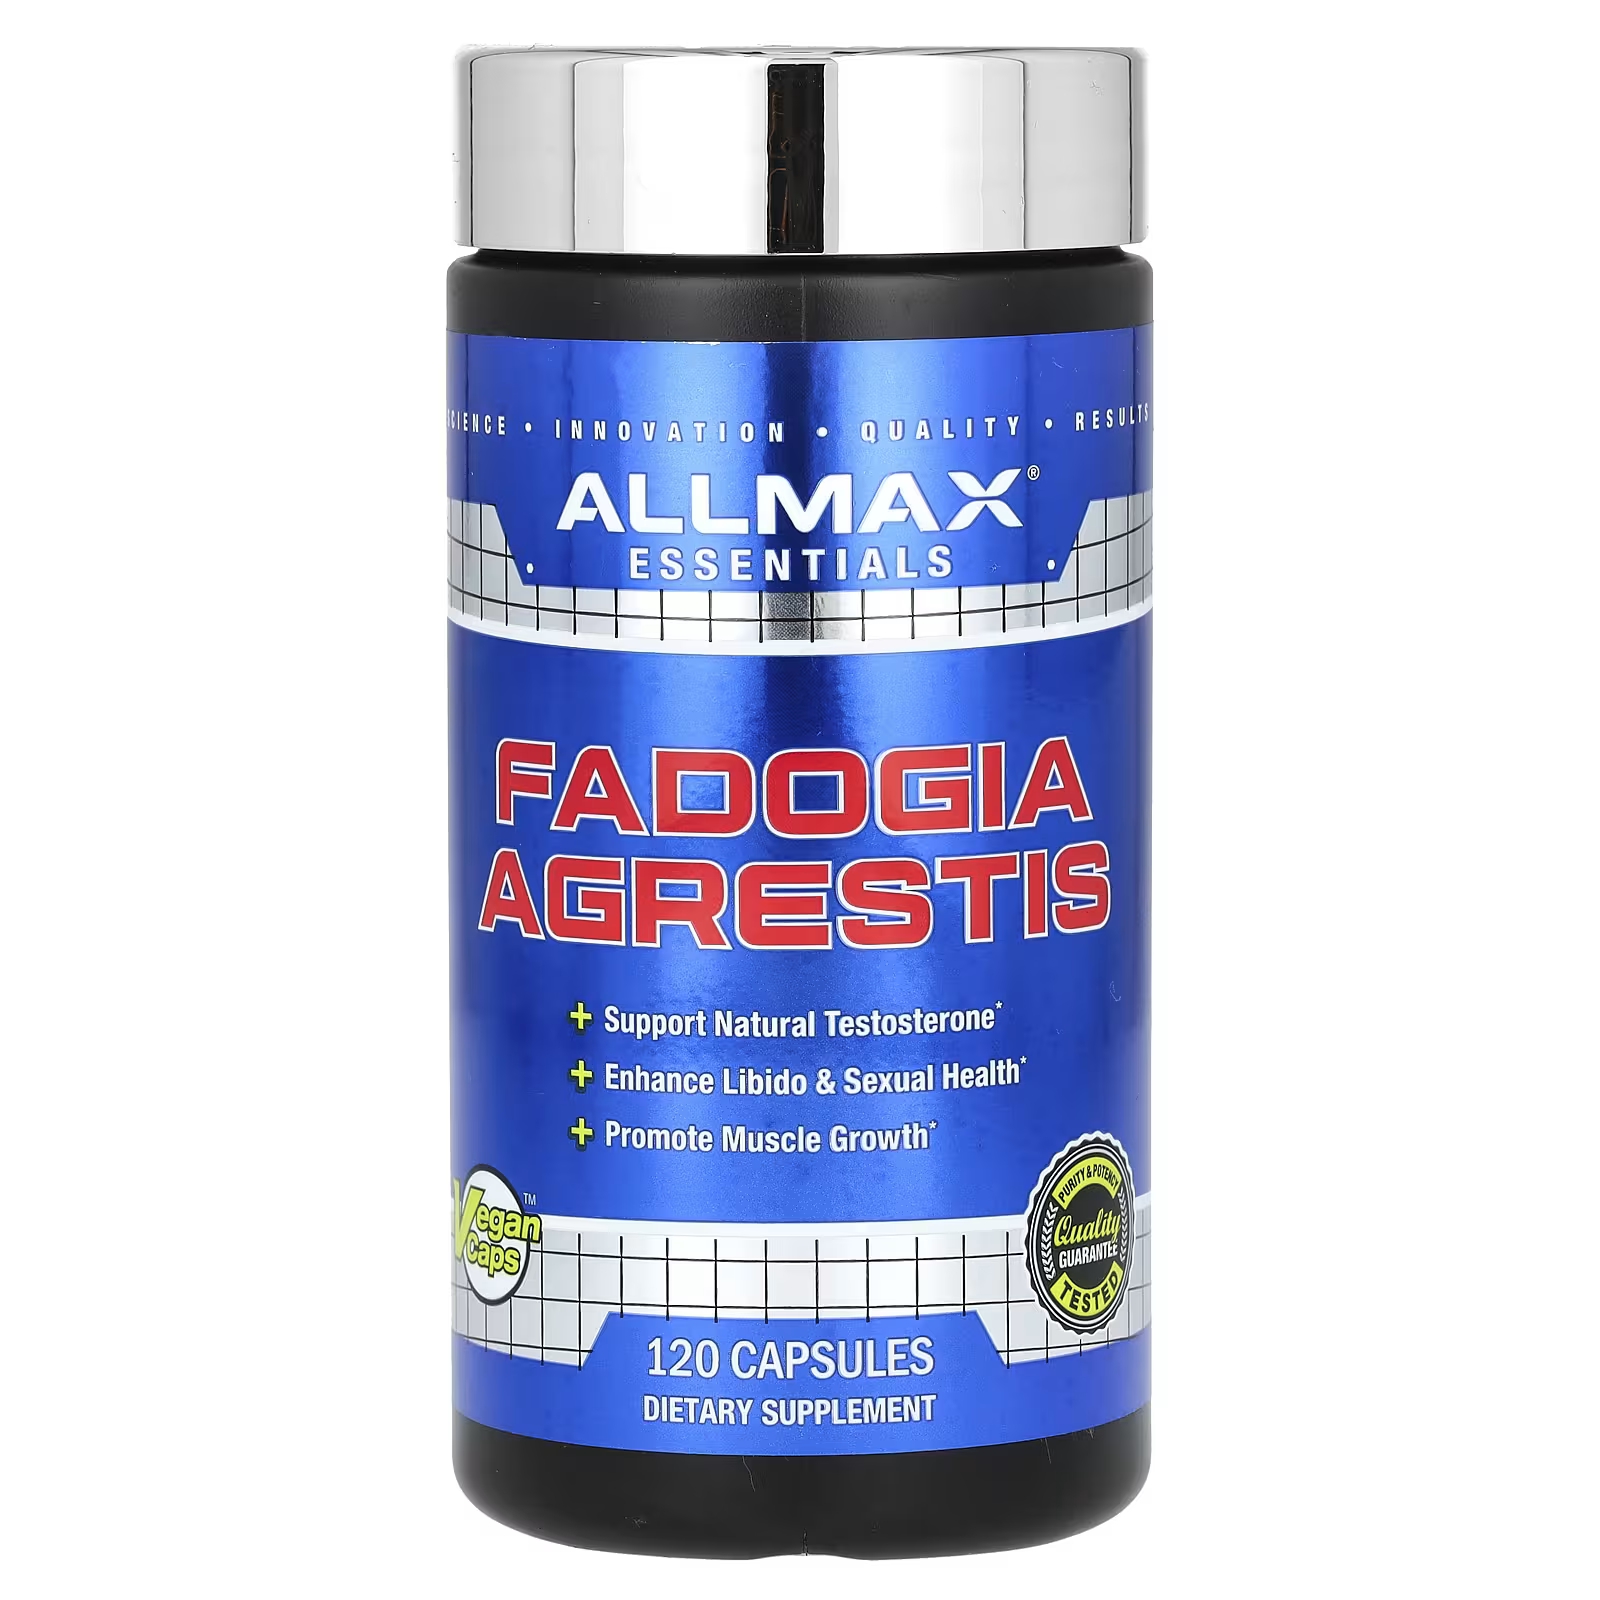 Пищевая добавка AllMax Essentials Fadogia Agrestis, 120 капсул фадогия агрестис бустер тестостерона от evlution nutrition fadogia agrestis 30 капсул